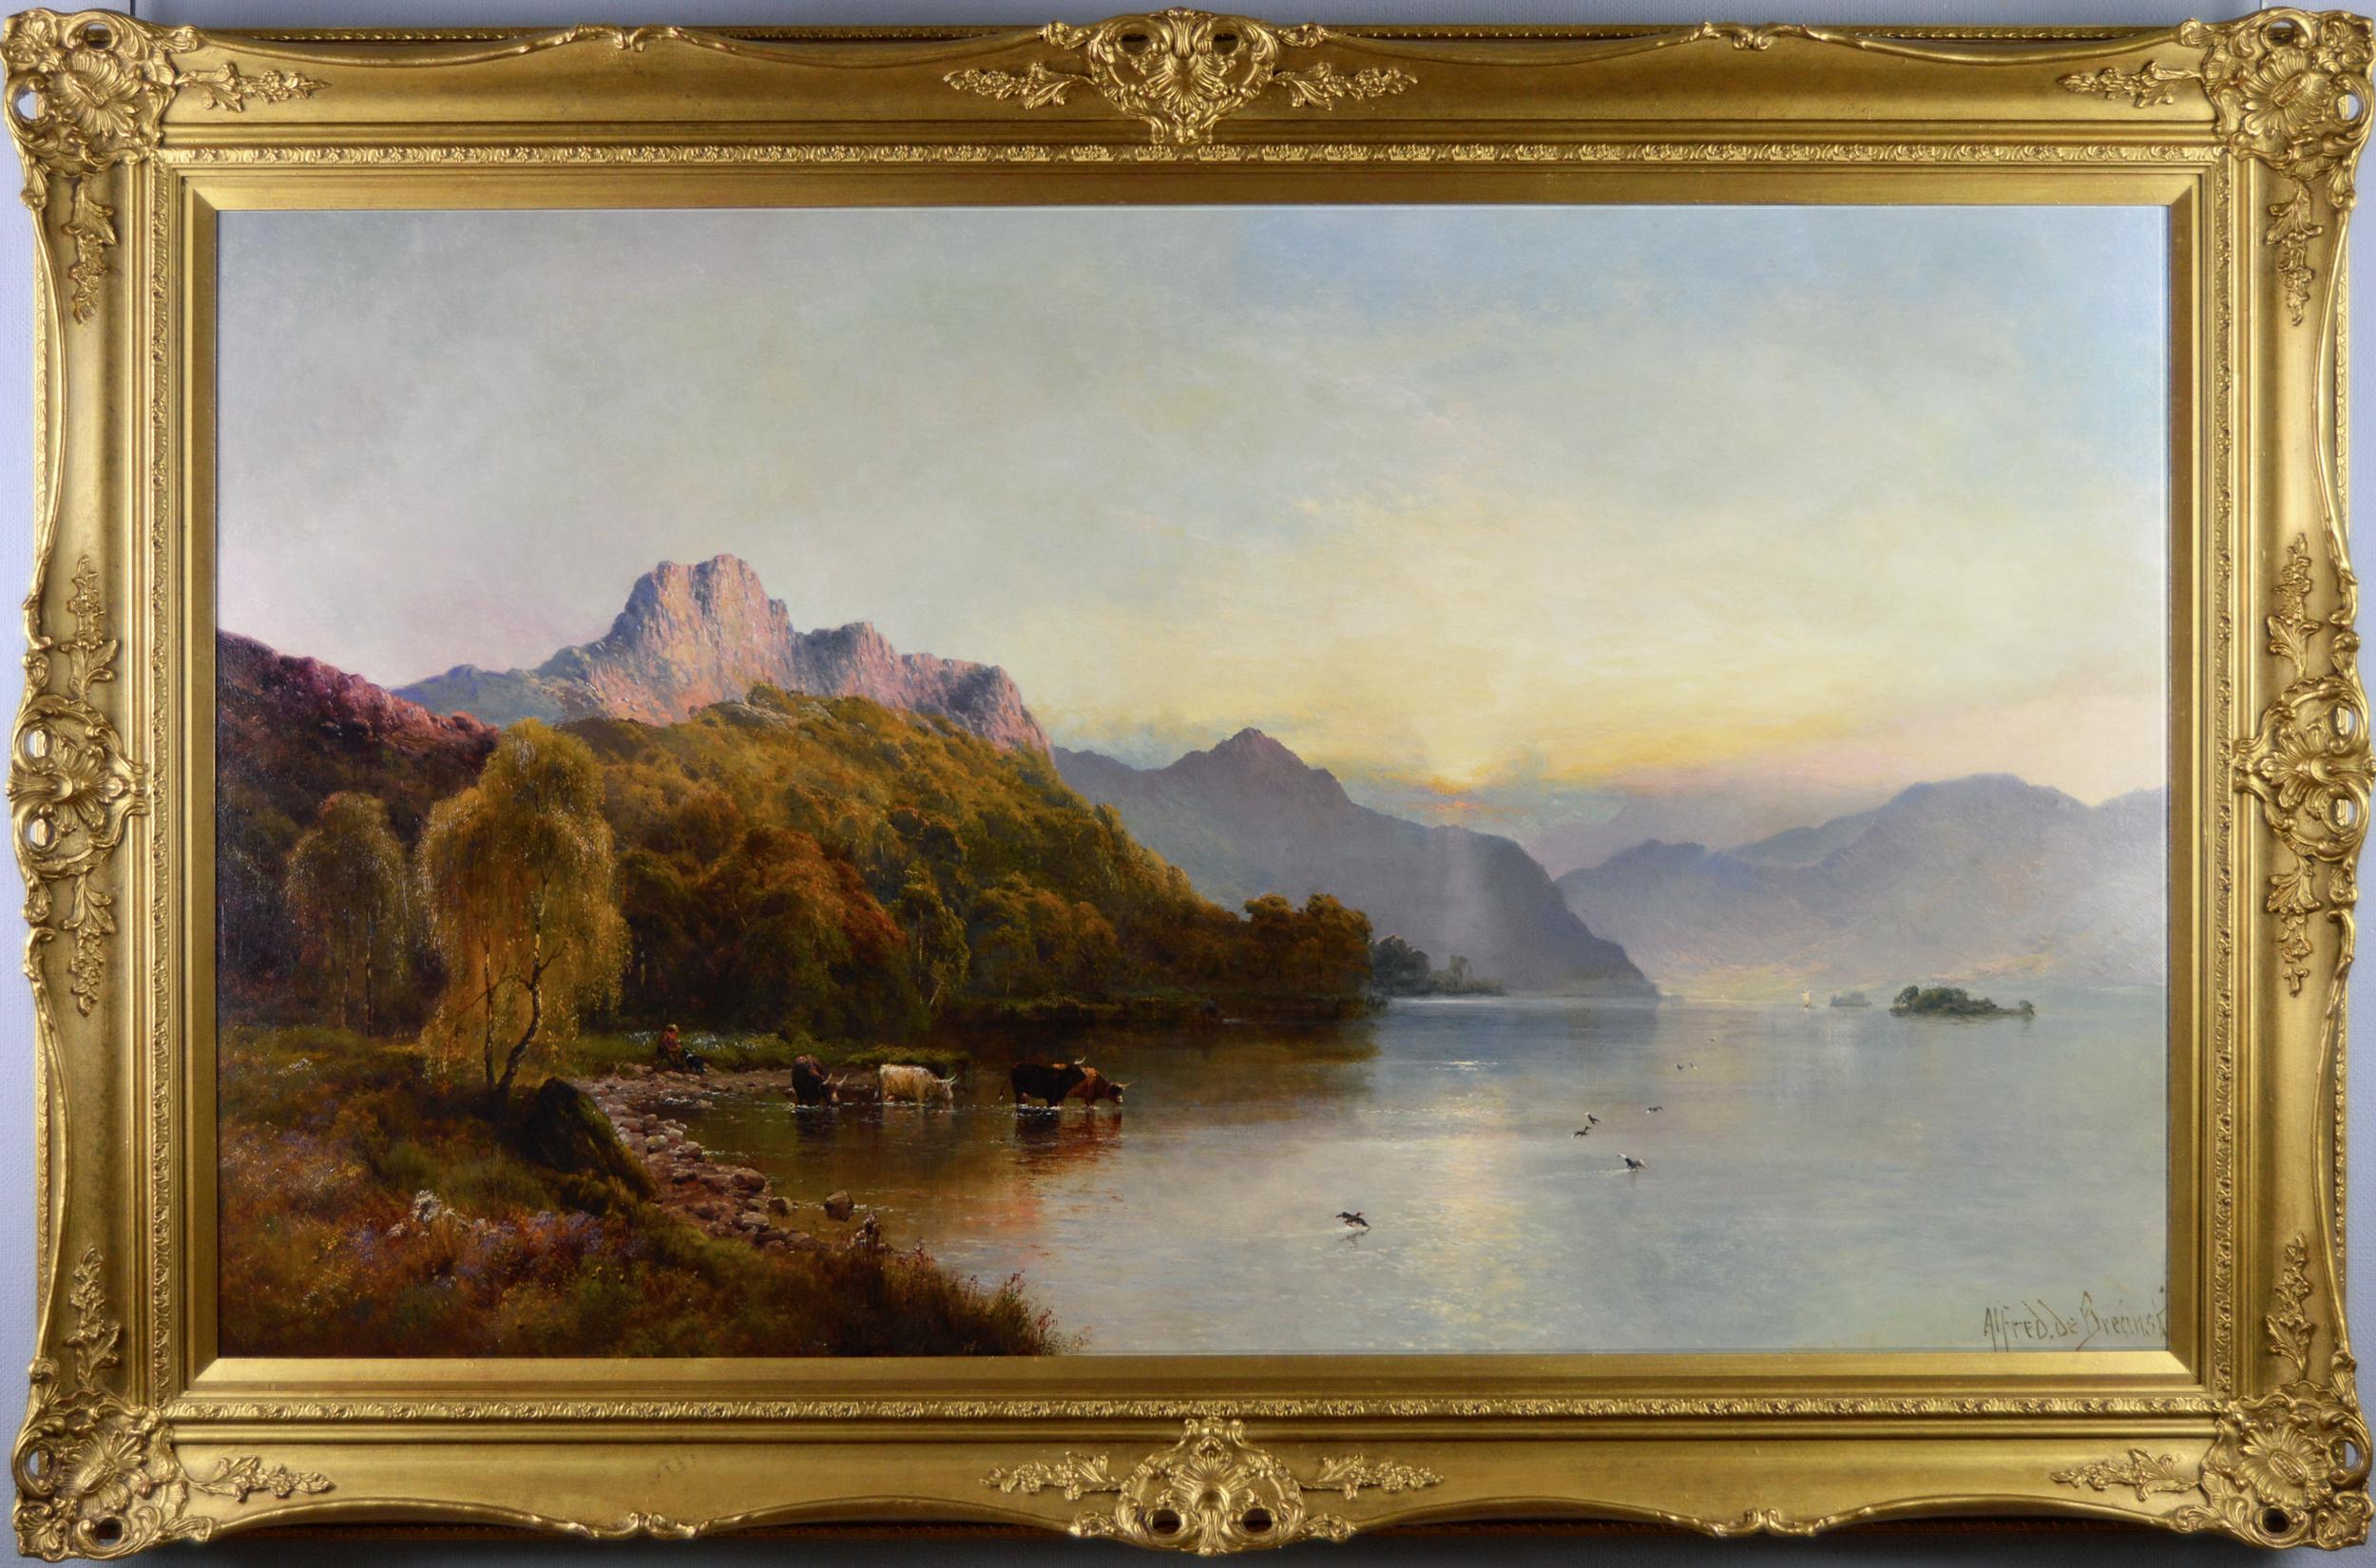 Alfred de Breanski Sr. Landscape Painting – Landschafts-Ölgemälde des Windemere-Seees in großem Maßstab aus dem 19. Jahrhundert